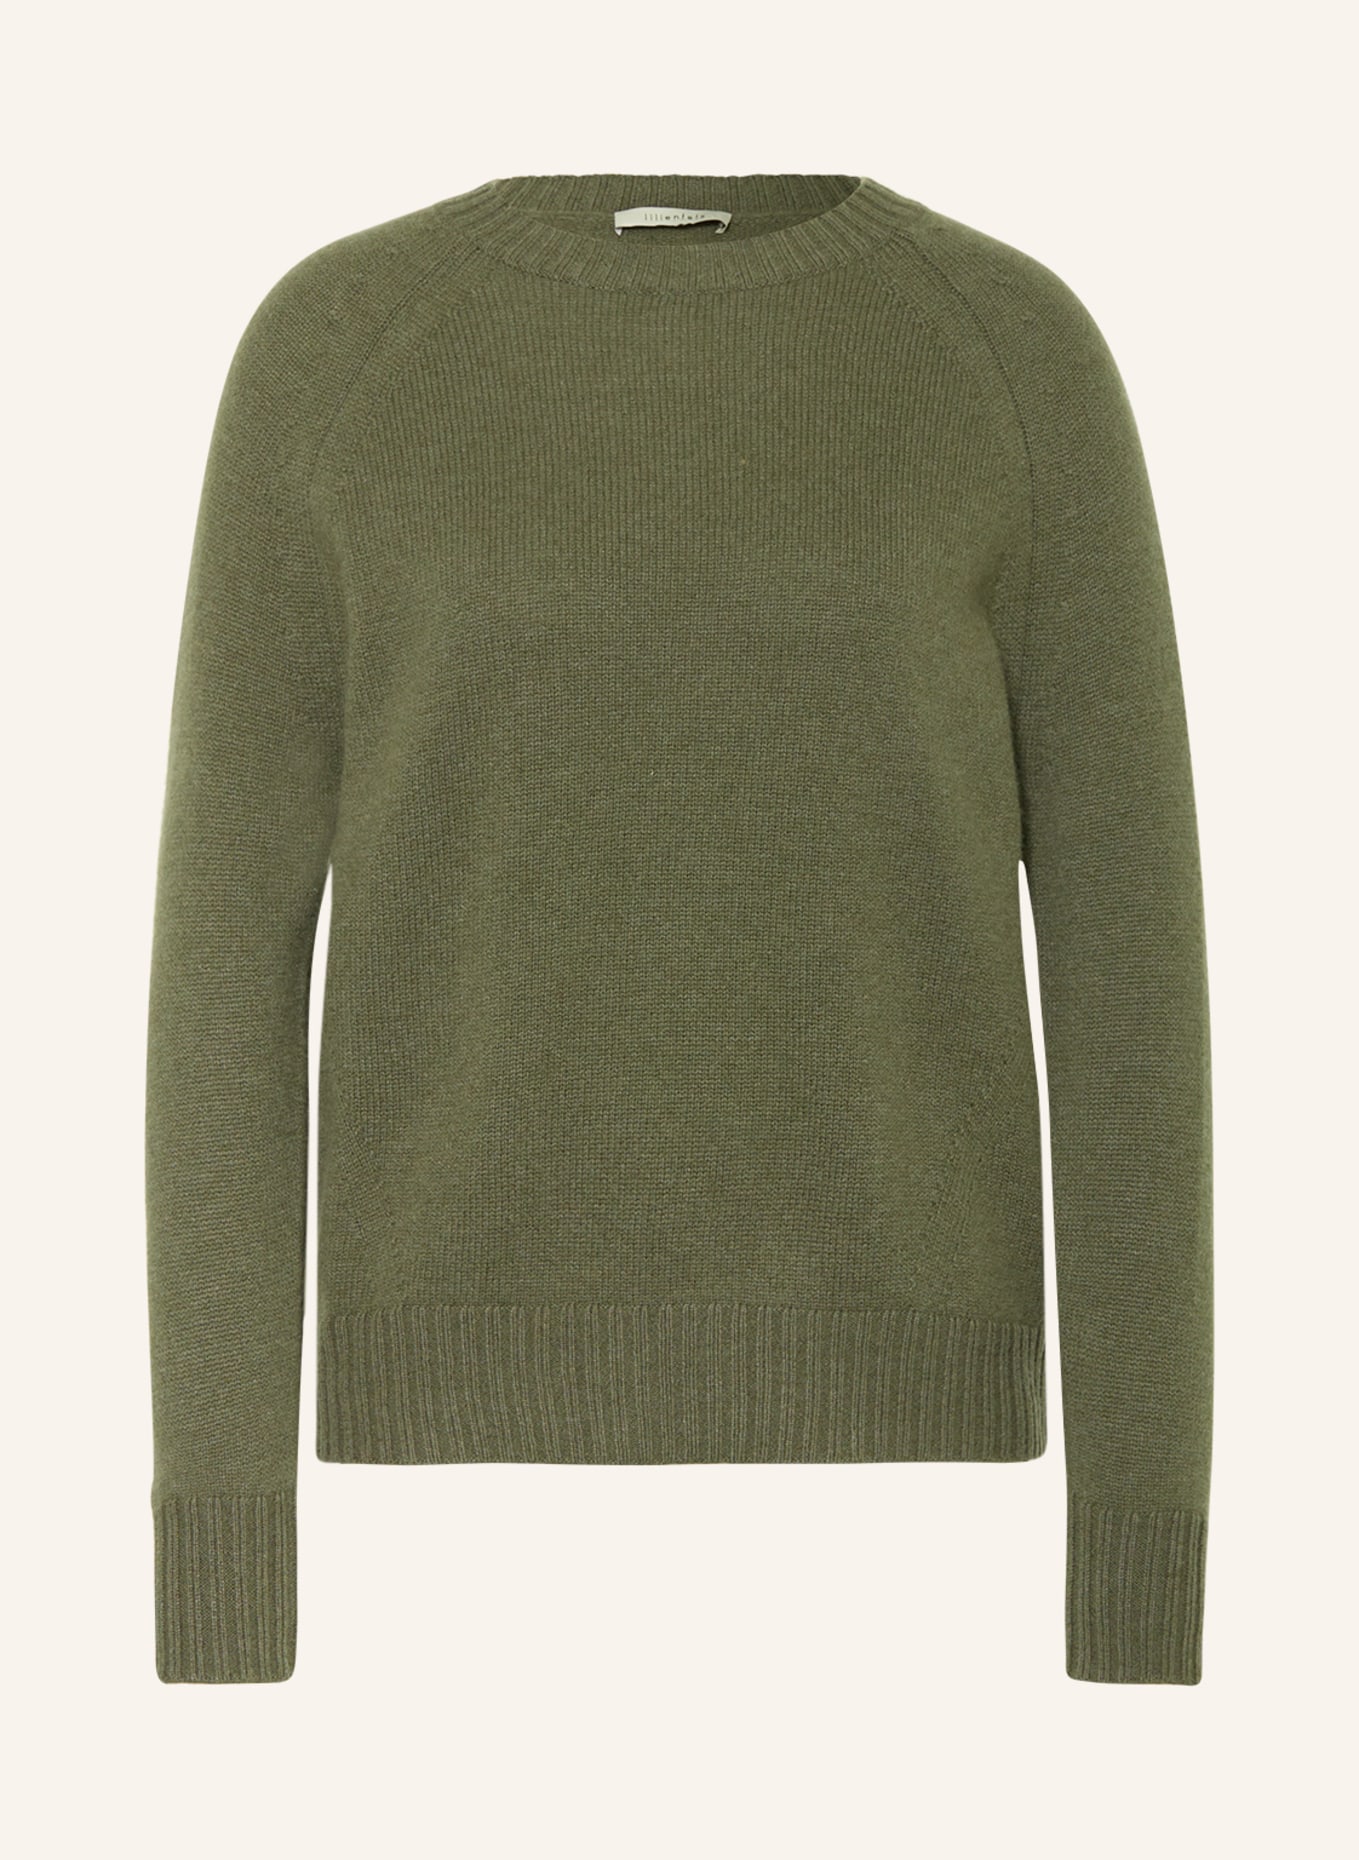 lilienfels Cashmere sweater, Color: KHAKI (Image 1)